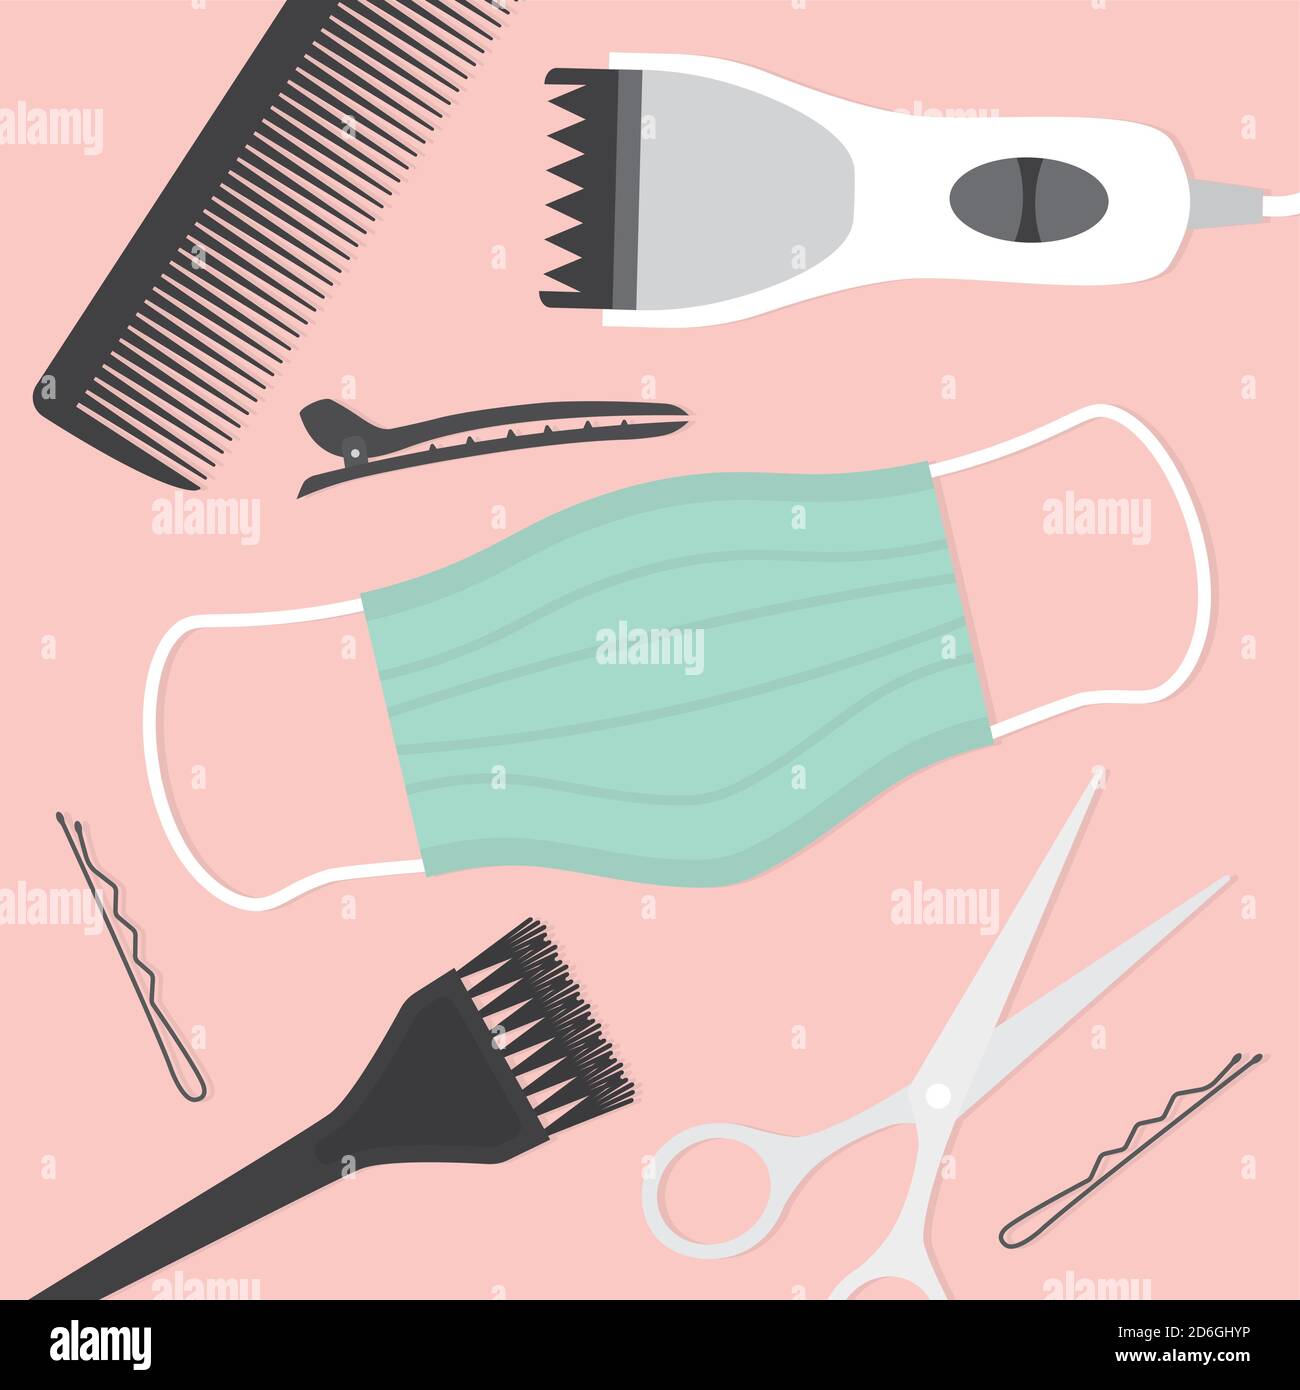 Friseur-Tools, Besuch beim Friseur während Coronavirus Pandemie, Schutzmaßnahmen, Gesichtsmaske - Vektor-Illustration Stock Vektor